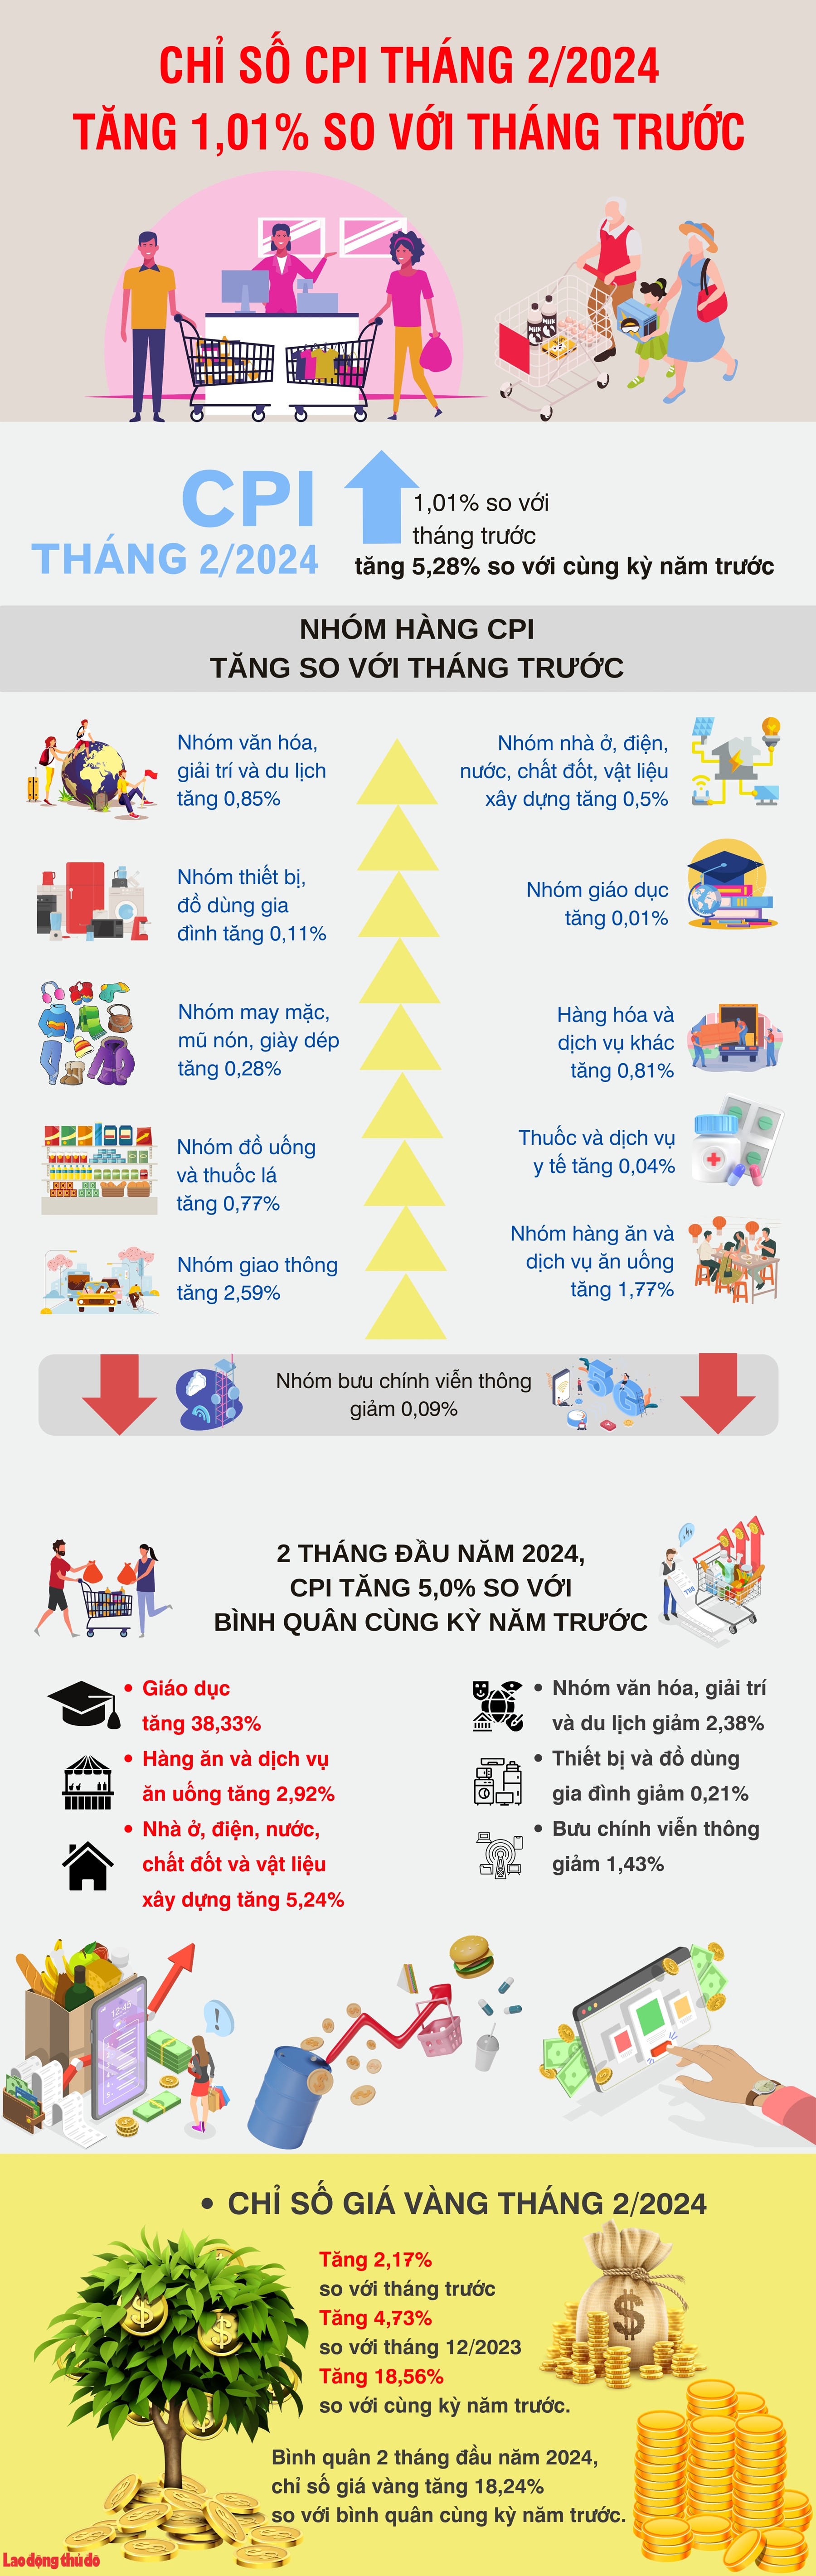 Hà Nội: Chỉ số CPI tháng 2/2024 tăng 1,01%